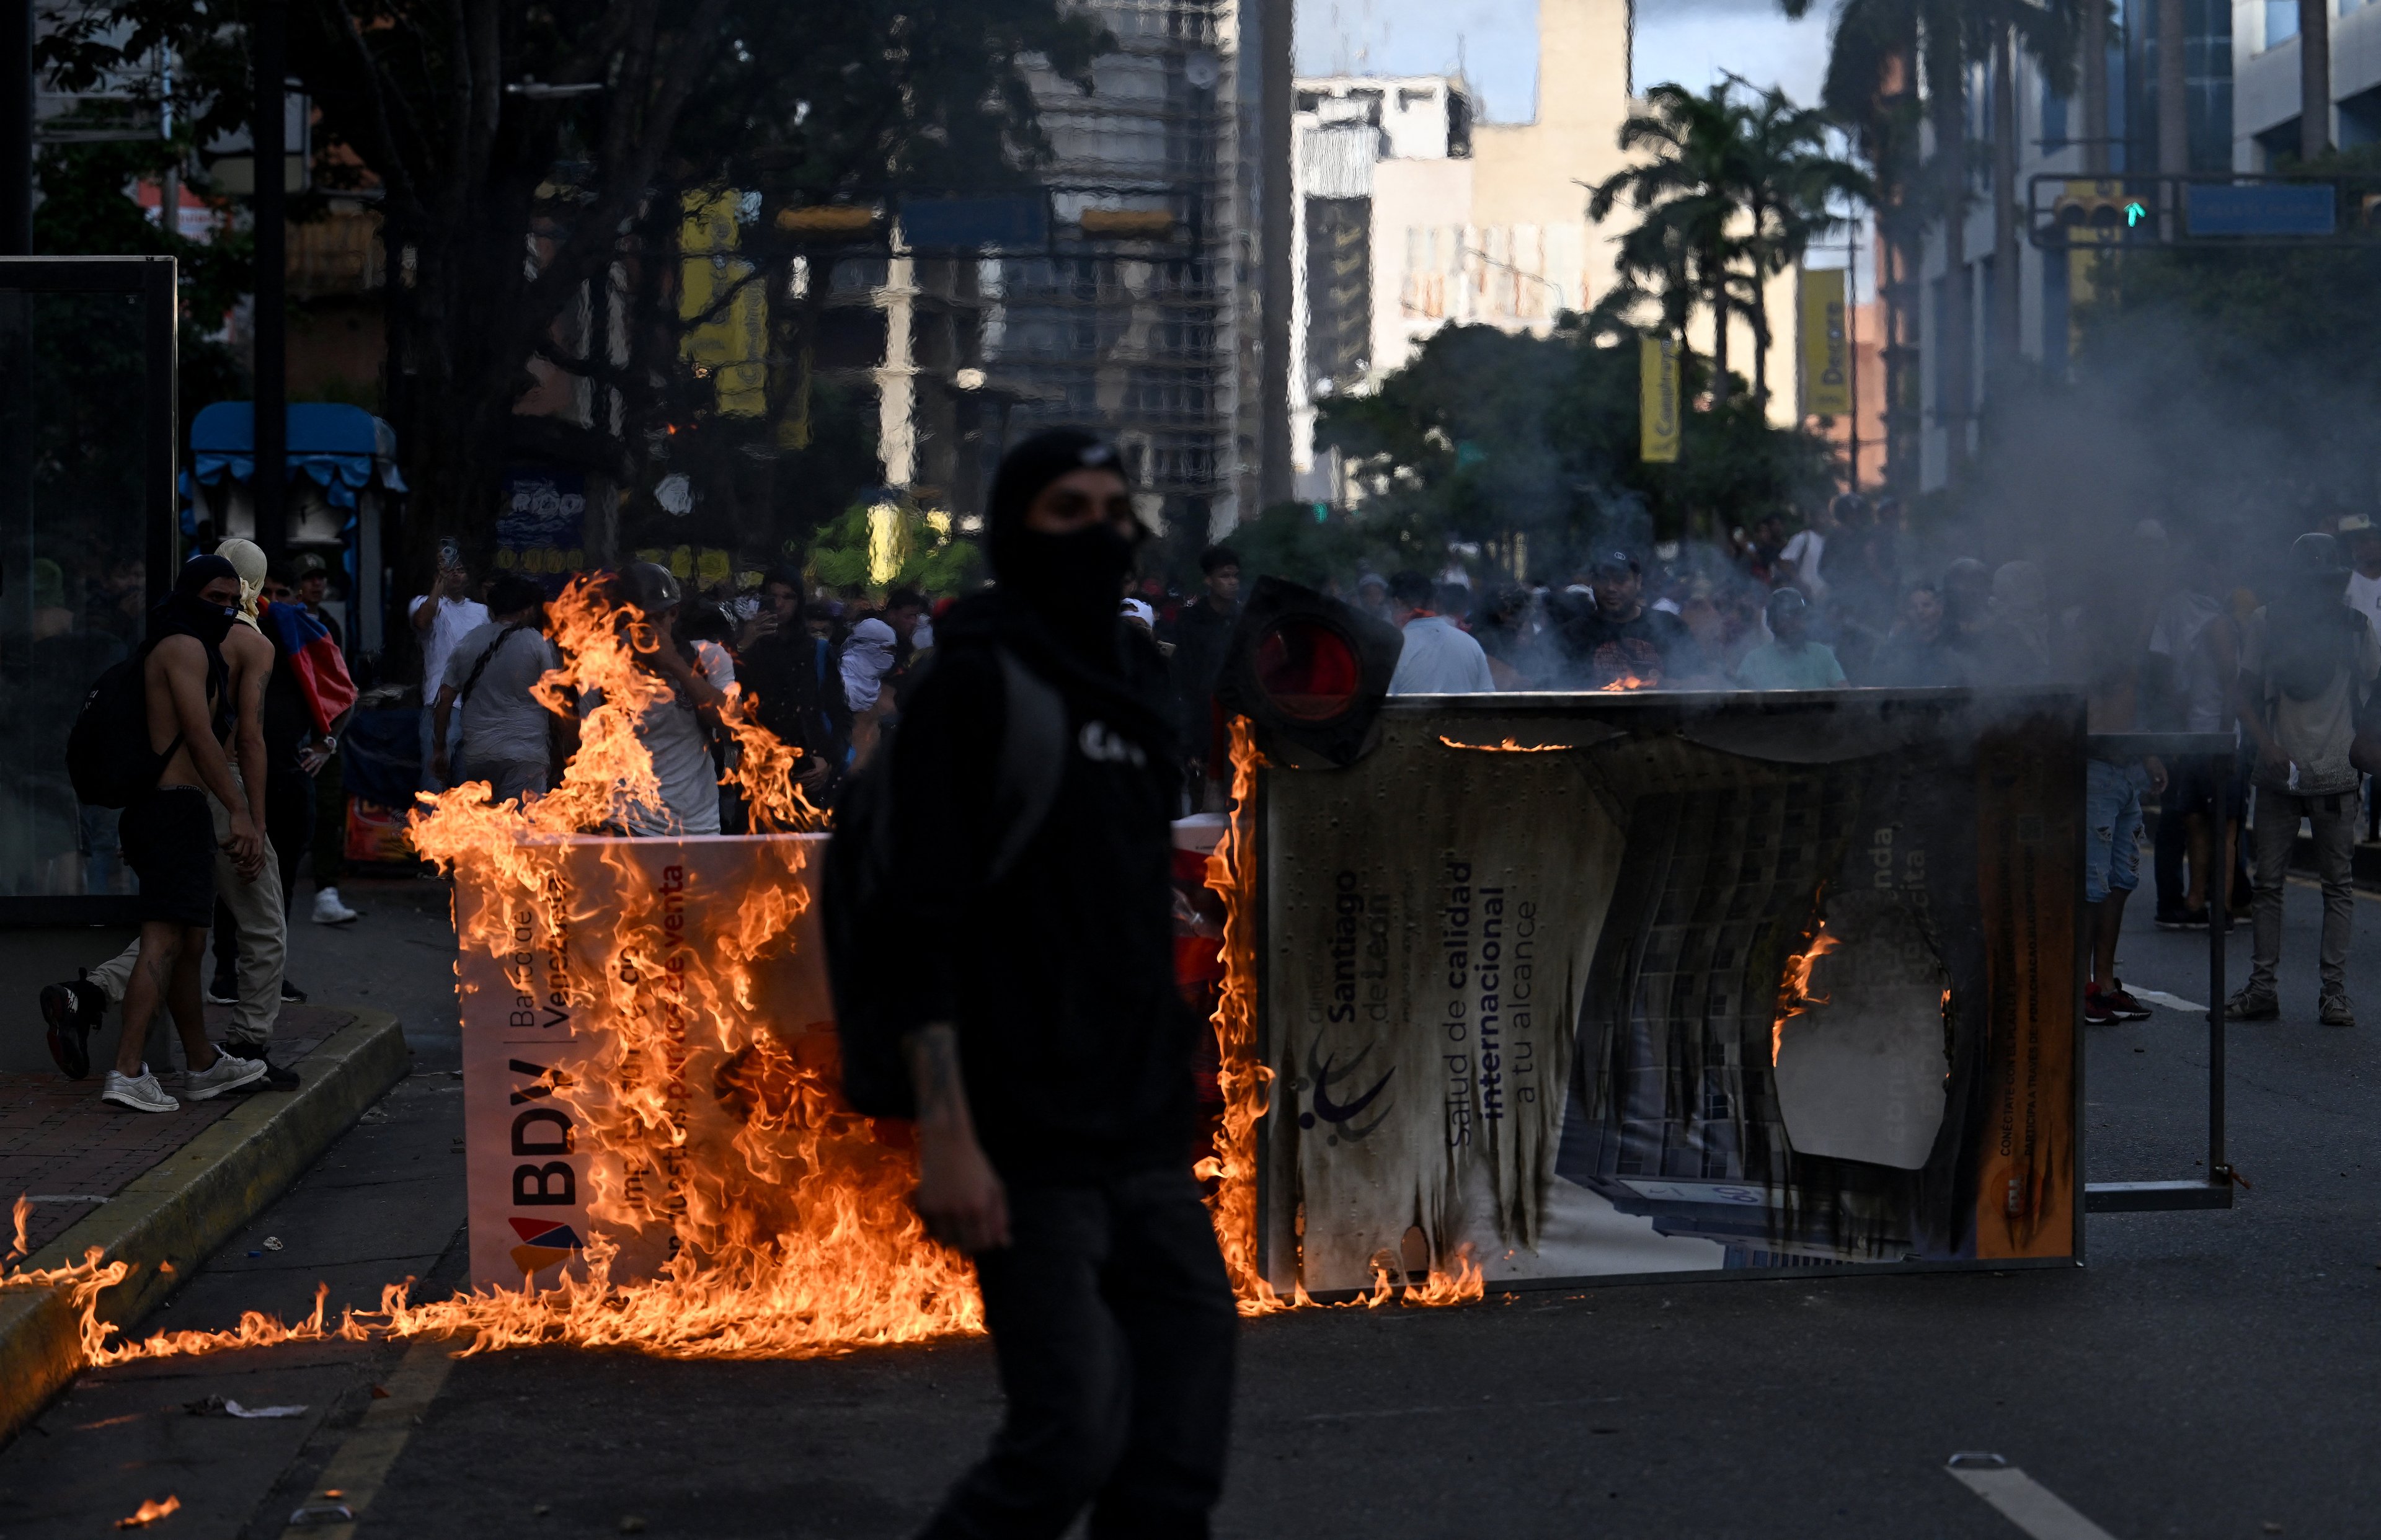 Manifestantes incendiaram uma barricada durante um protesto contra o governo do presidente venezuelano Nicolás Maduro em Caracas.